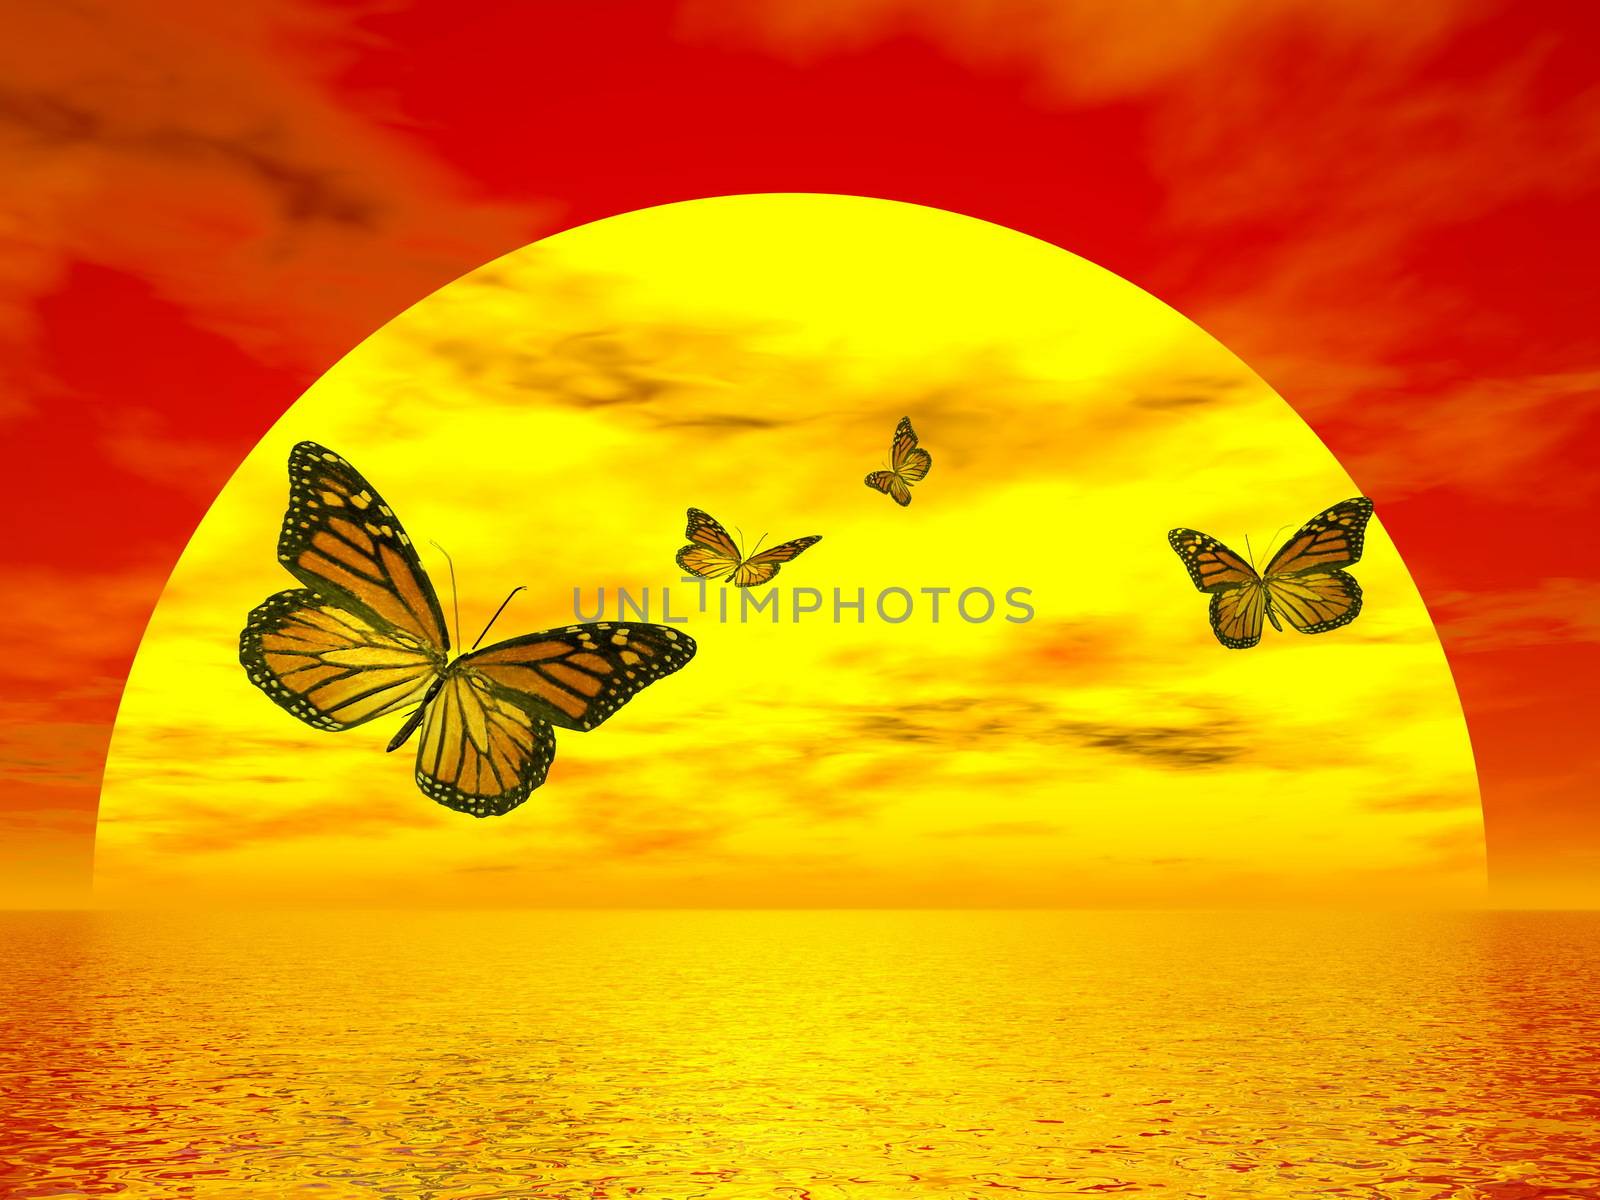 Butterflies monarch going to the sun - 3D render by Elenaphotos21